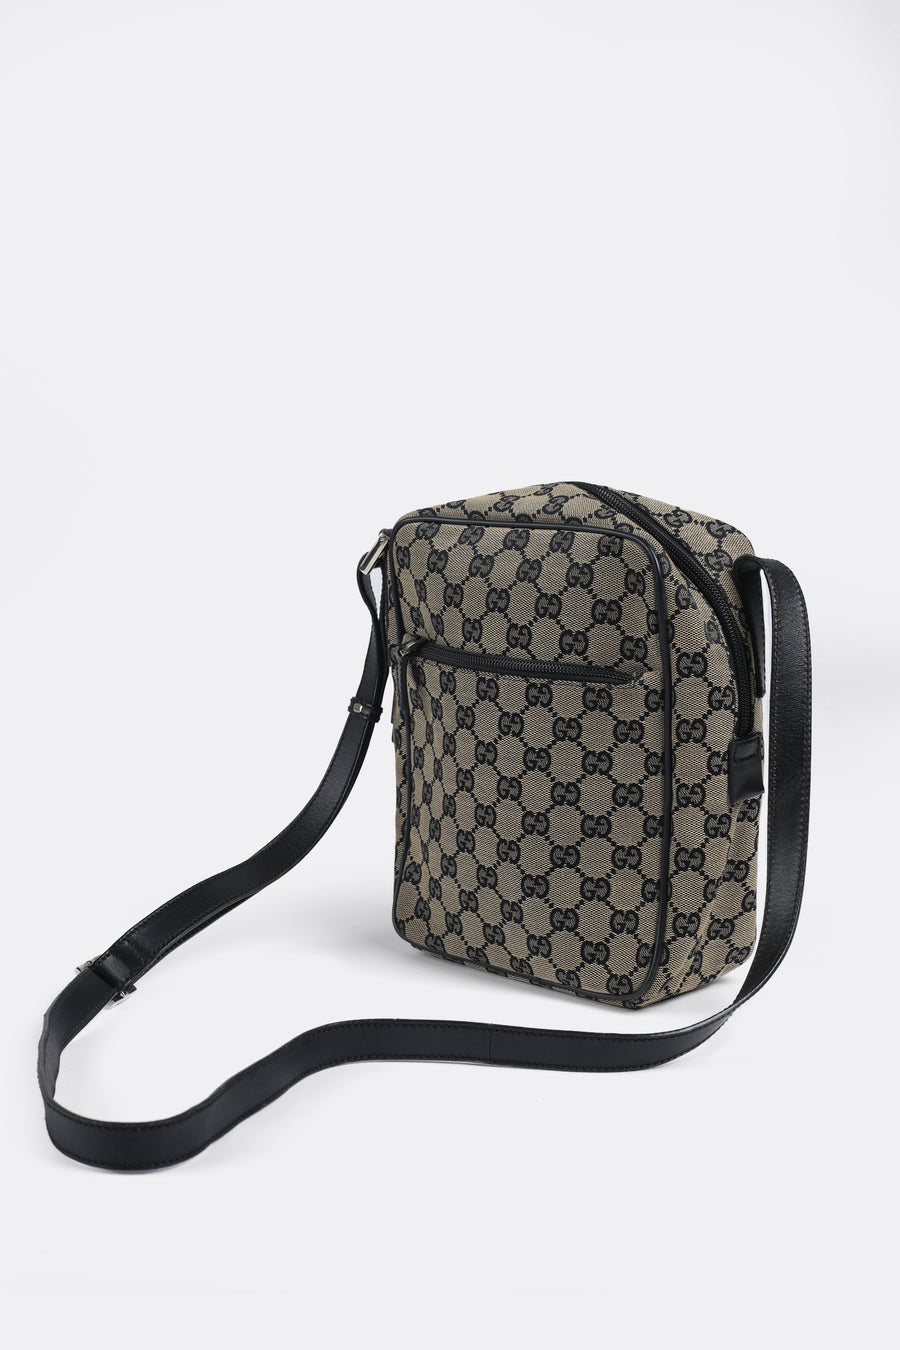 Vintage Gucci Monogram Bag I Black